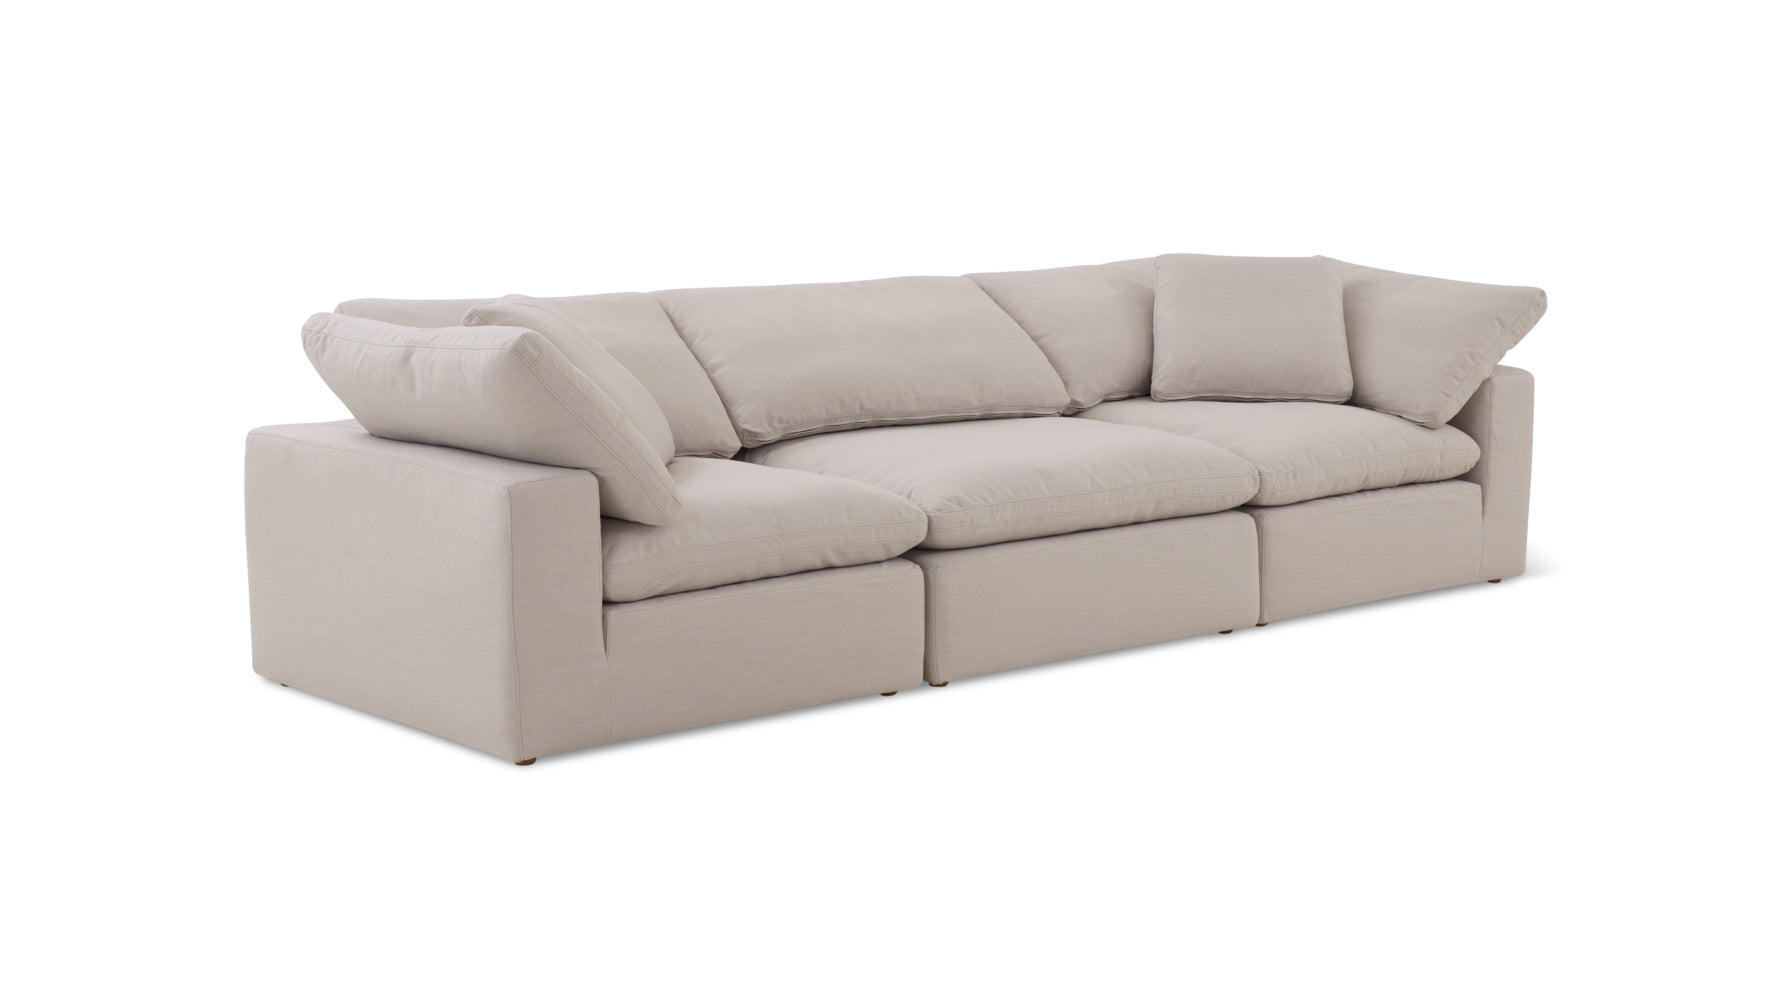 Movie Night™ 3-Piece Modular Sofa, Large, Clay - Image 7